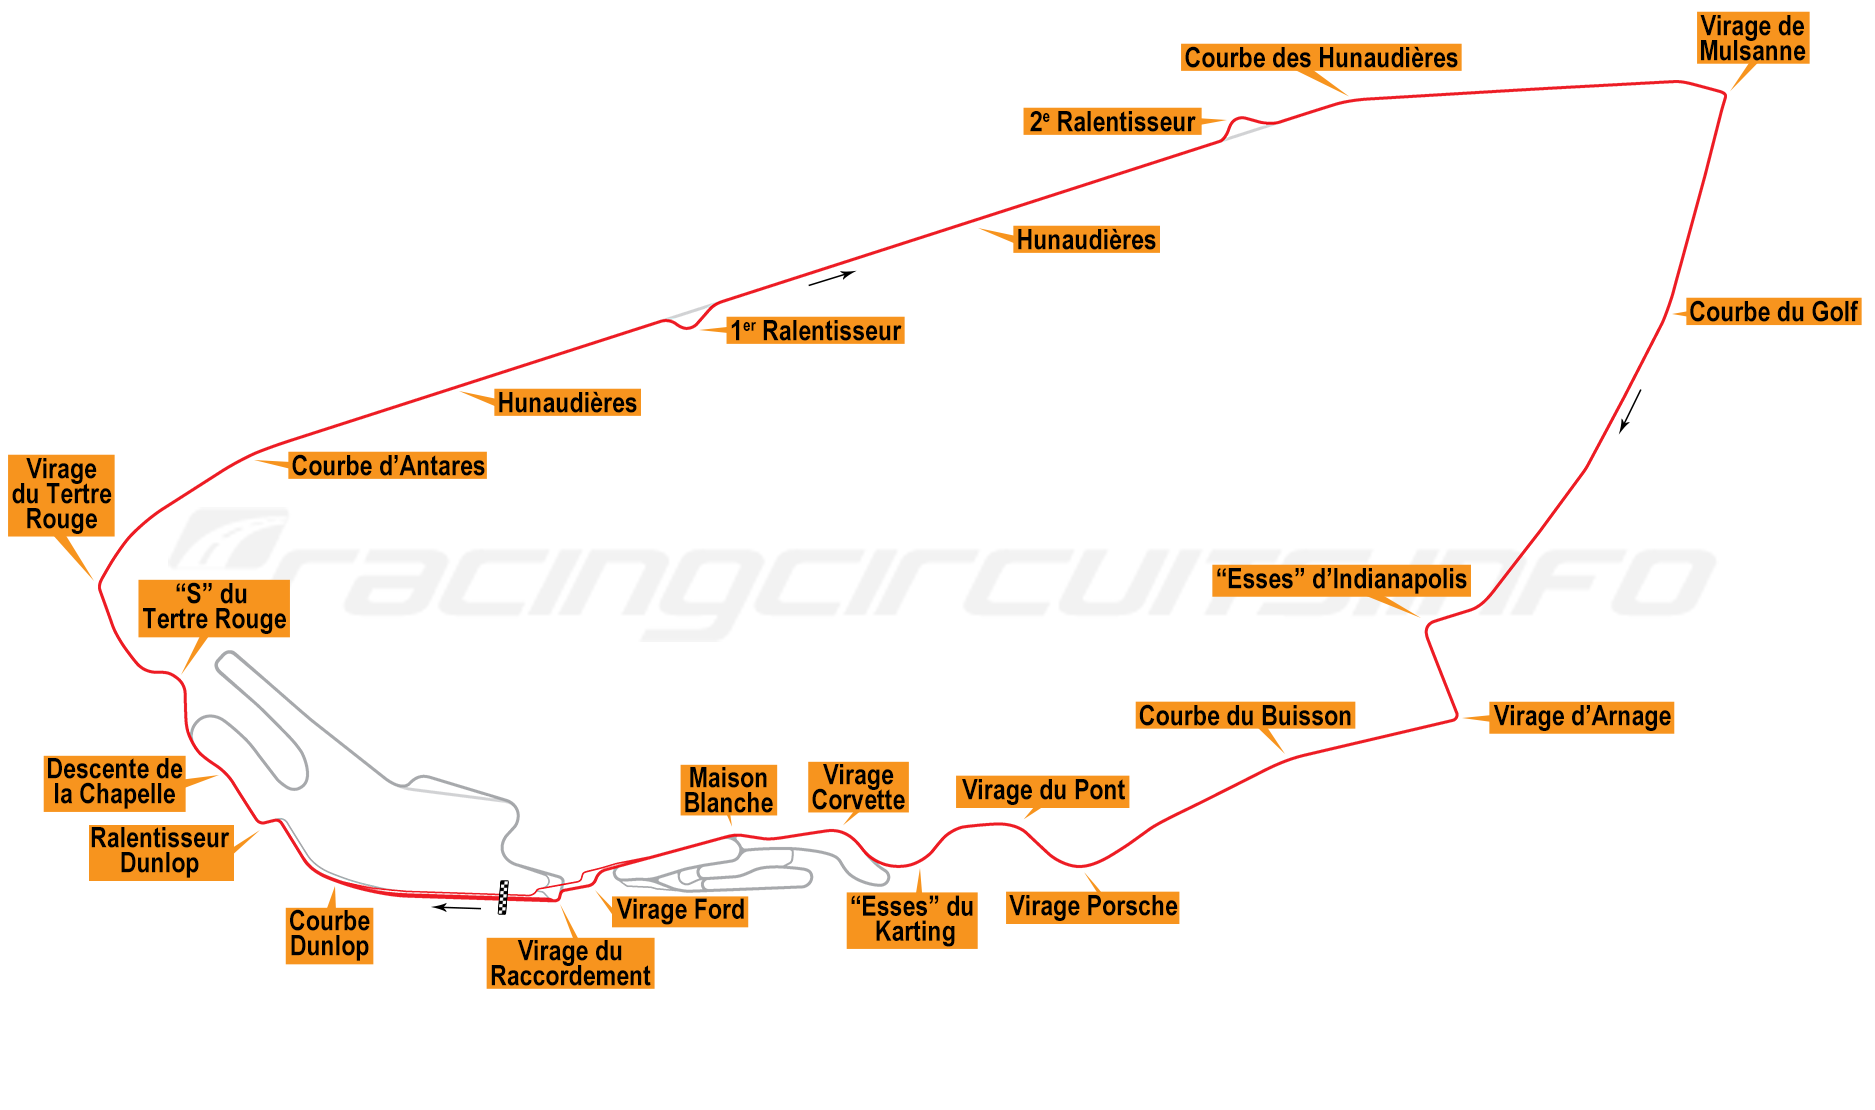 Map of Le Mans, Circuit de la Sarthe 2015 to date